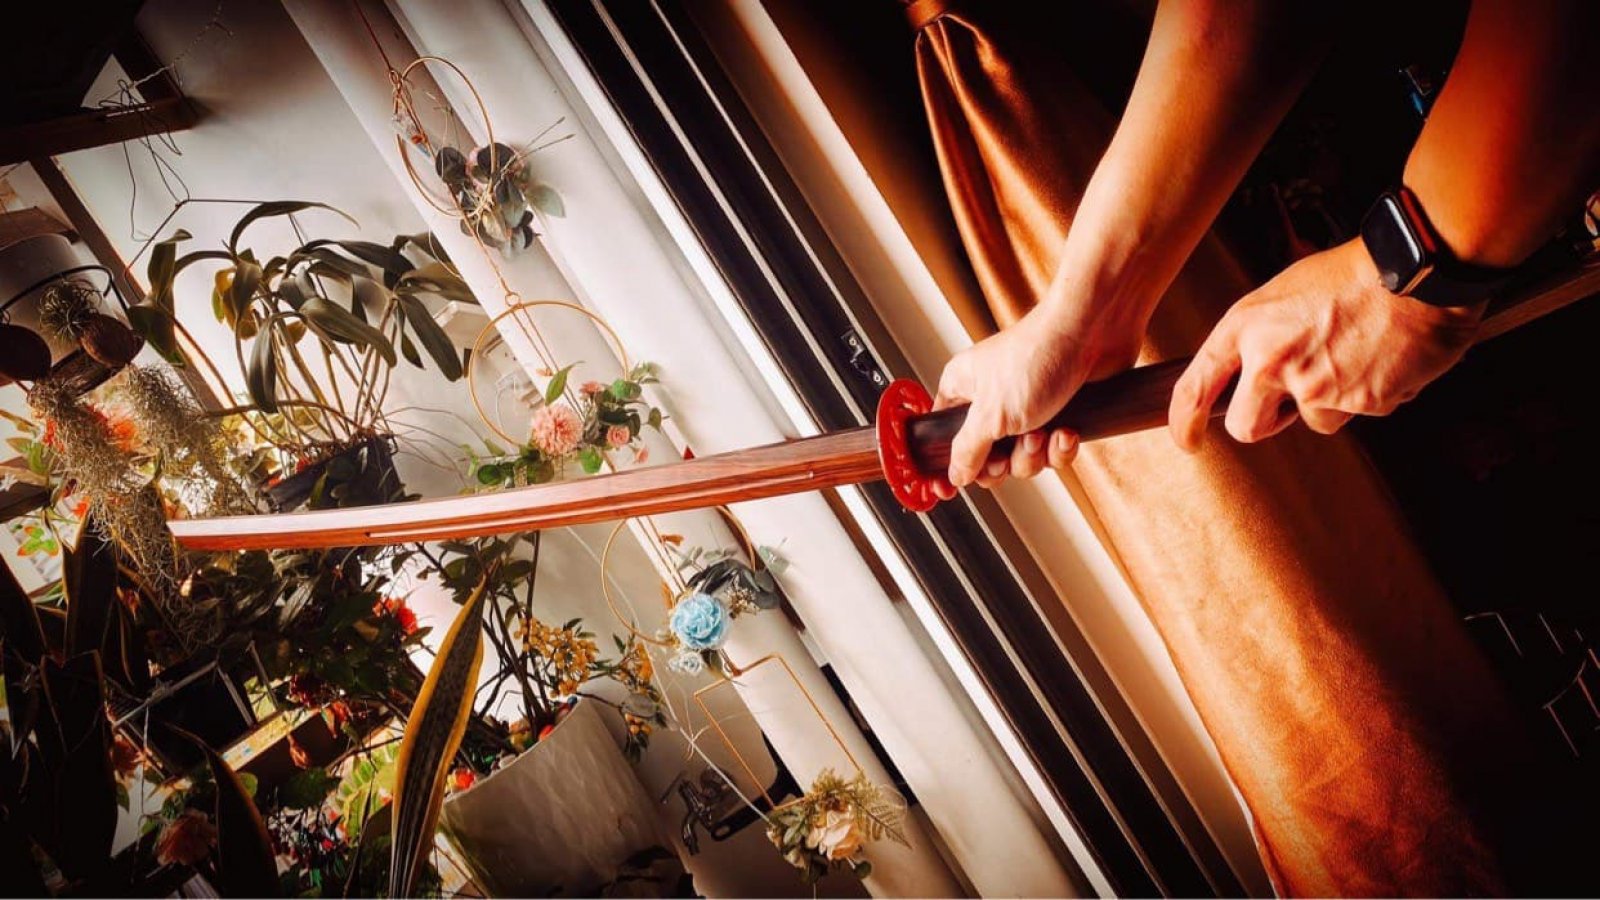 Mua kiếm gỗ để trưng bày phong thuỷ trong nhà ở đâu giá rẻ tphcm?